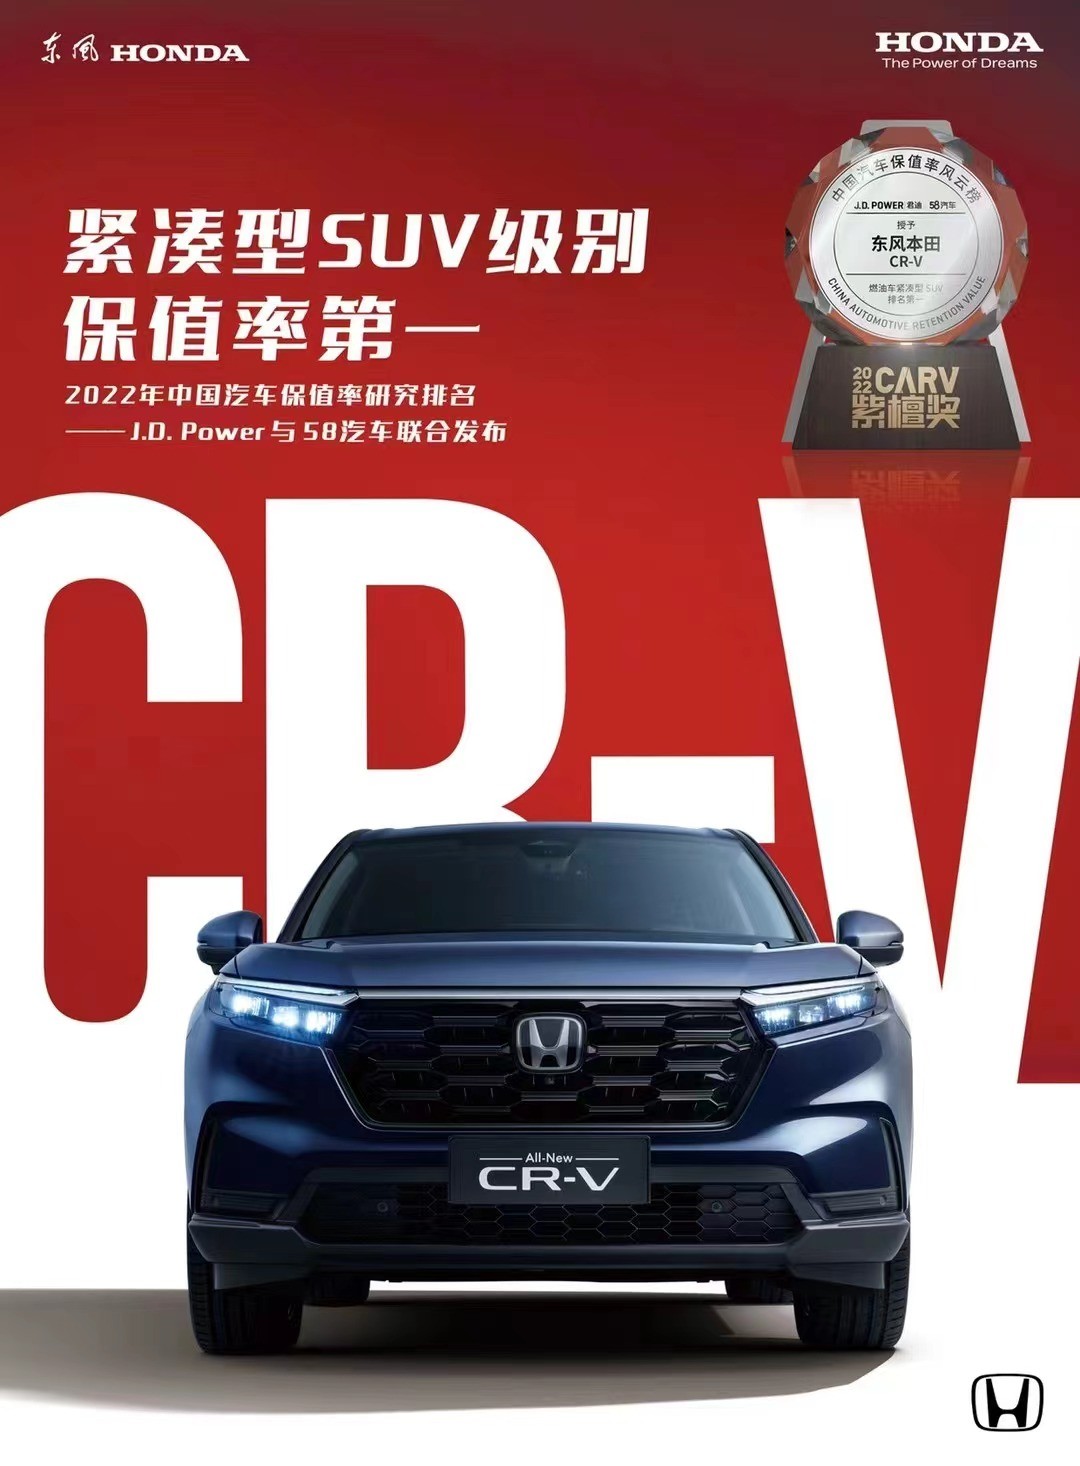 年终抄底 全新一代CR-V“双12品牌购车节”福利来袭